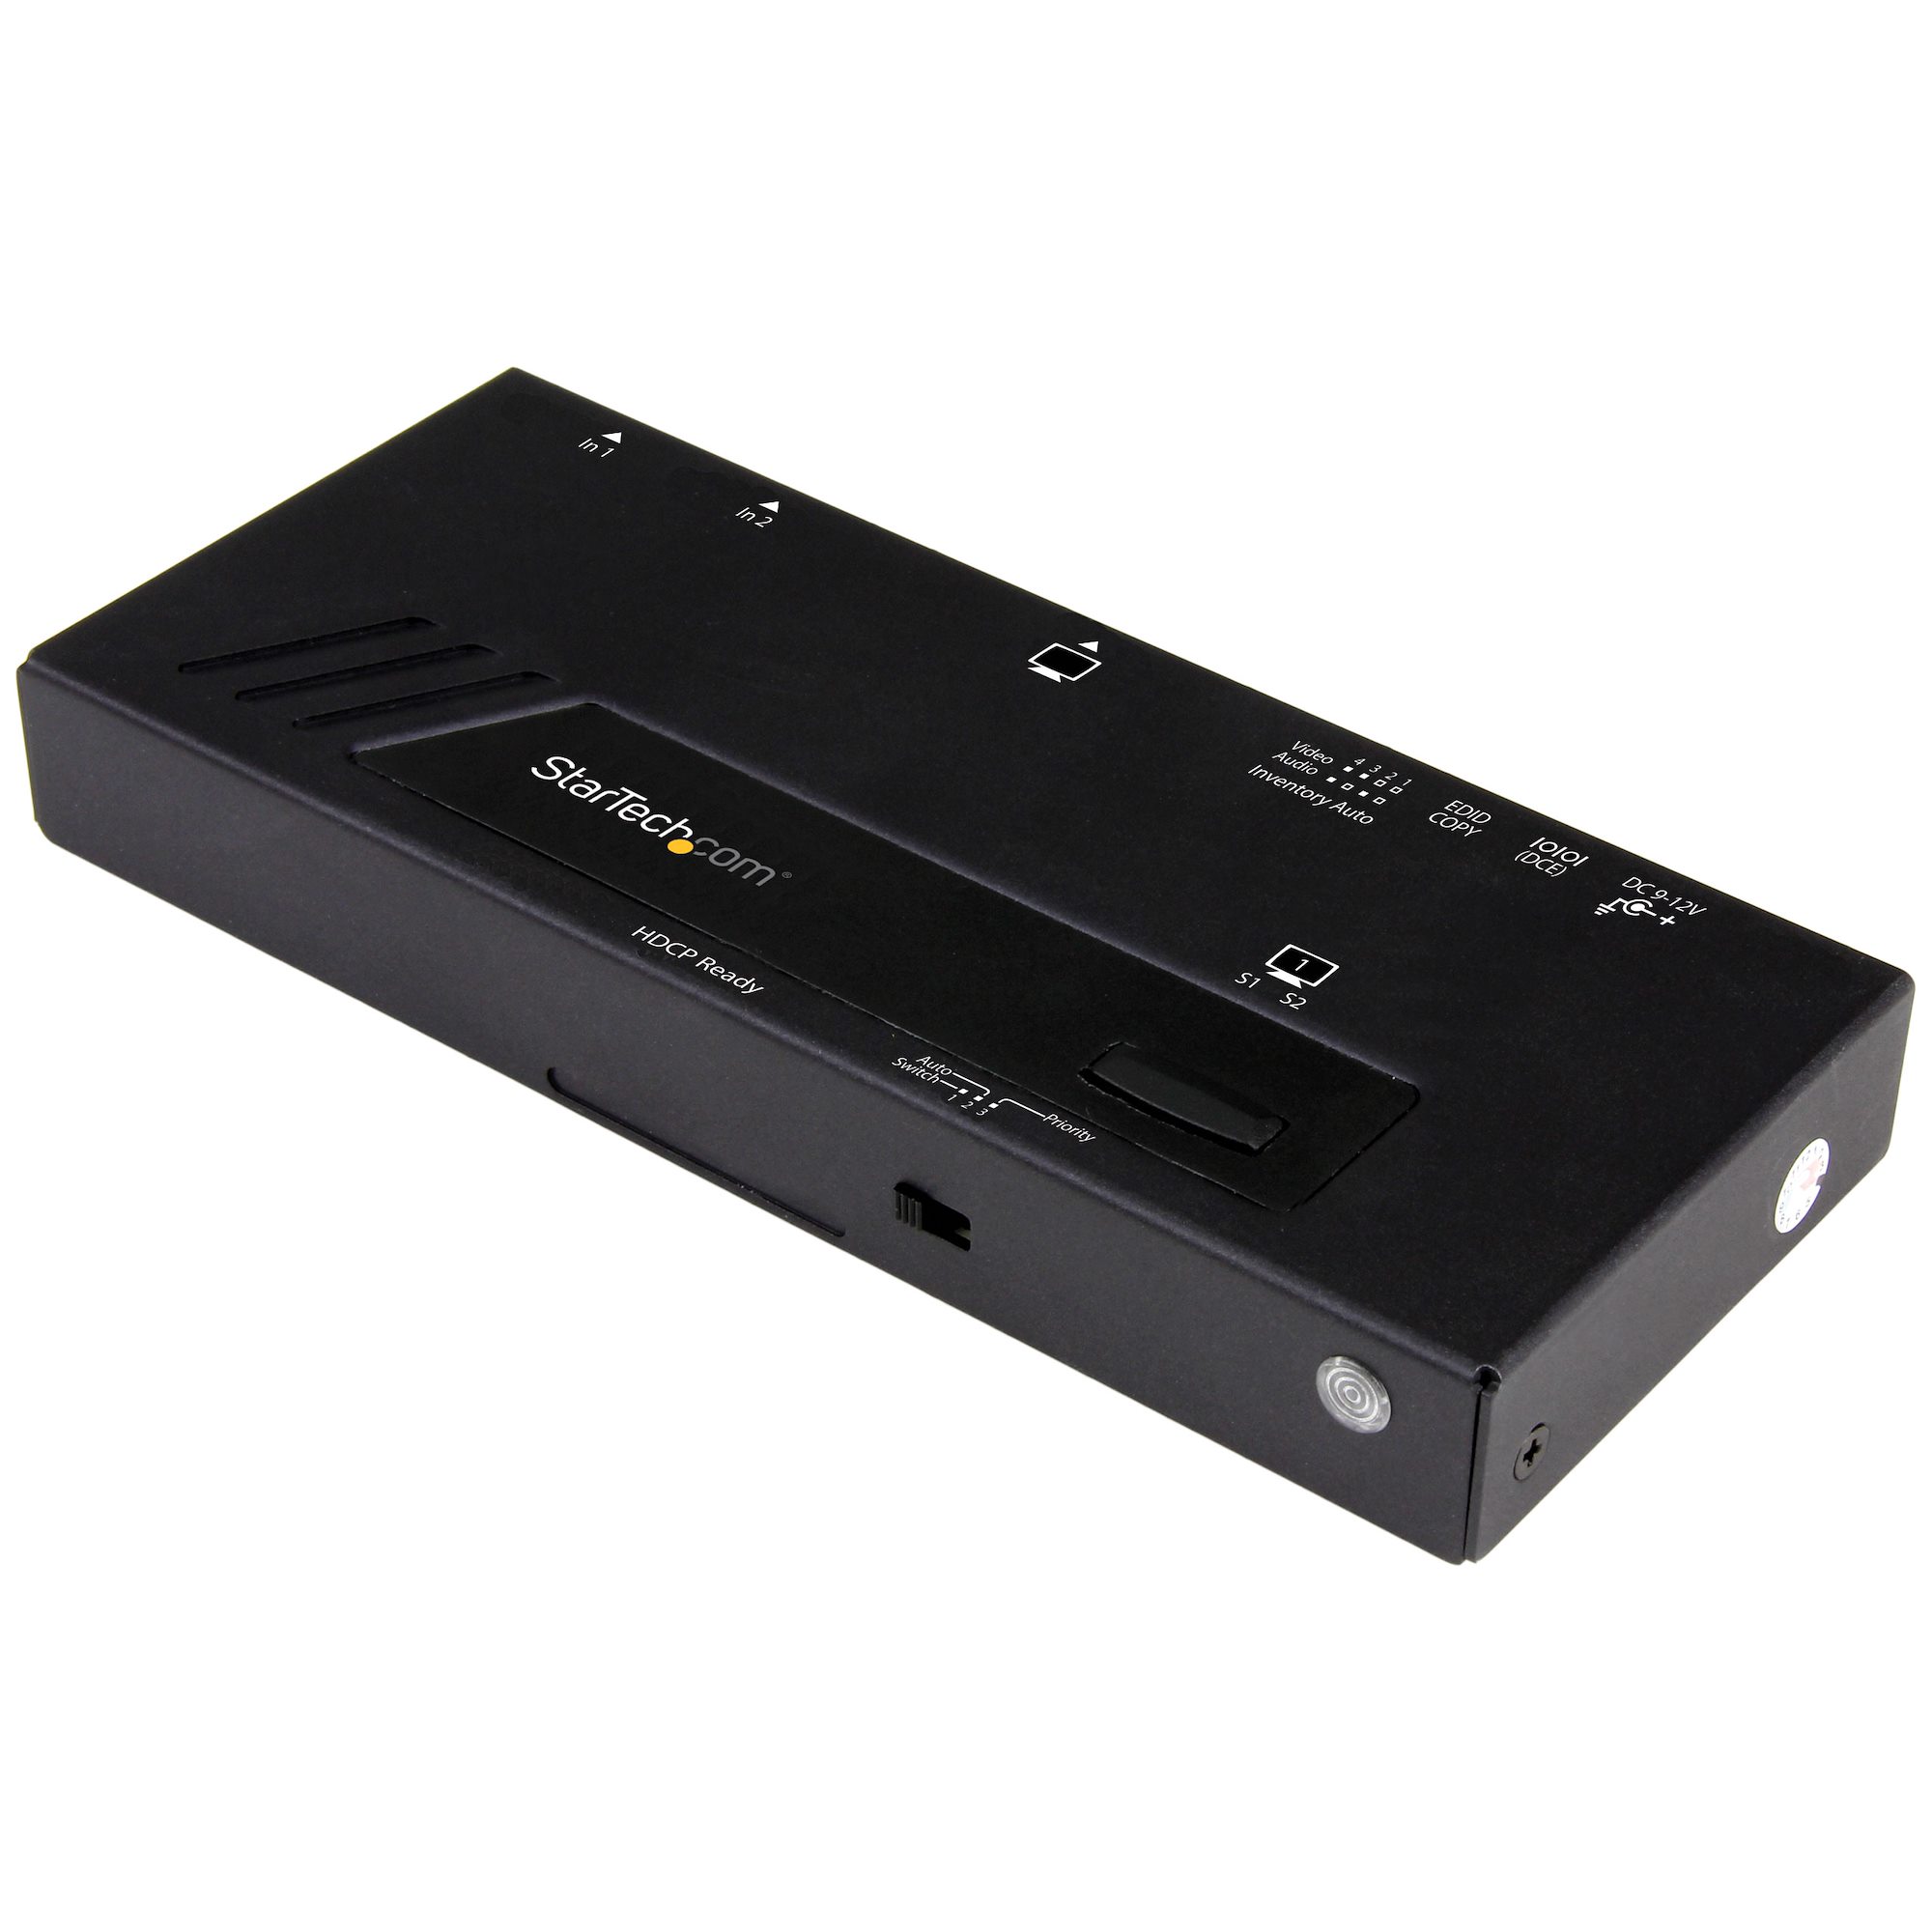 2入力(HDMI VGA)1出力(HDMI)対応ビデオ切替器スイッチャー 自動優先切替機能搭載 1080p VS